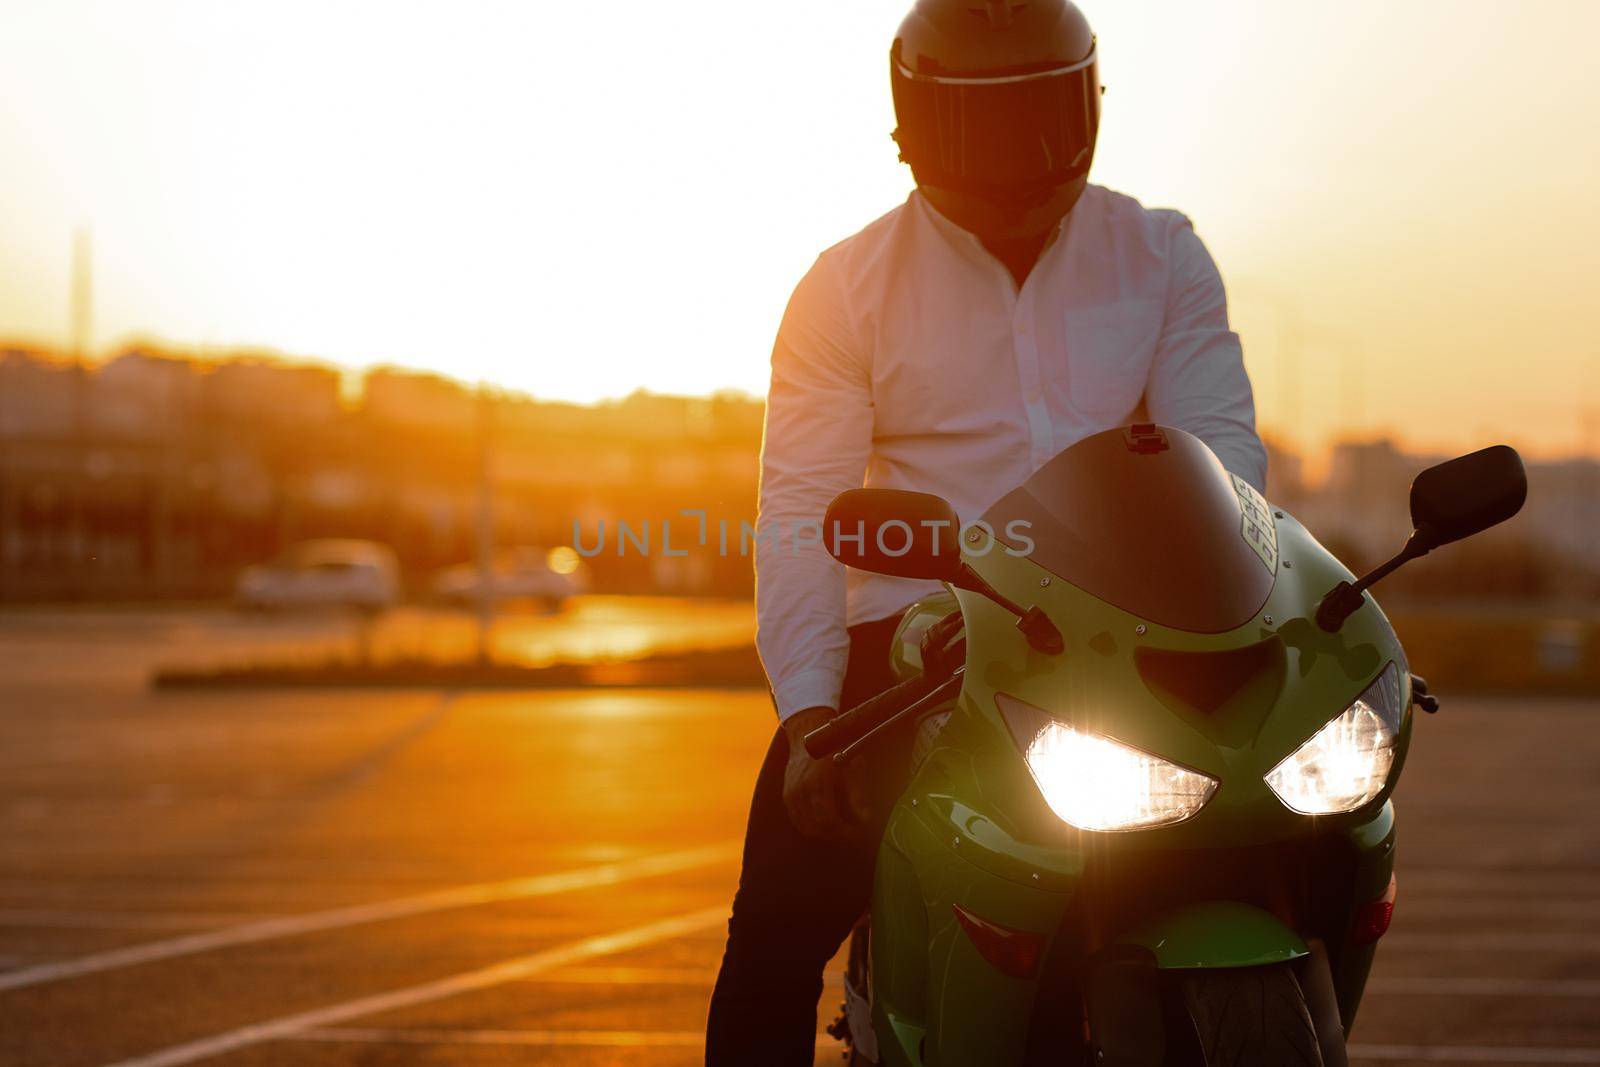 Cool man on motorcycle against sundown sky by 3KStudio